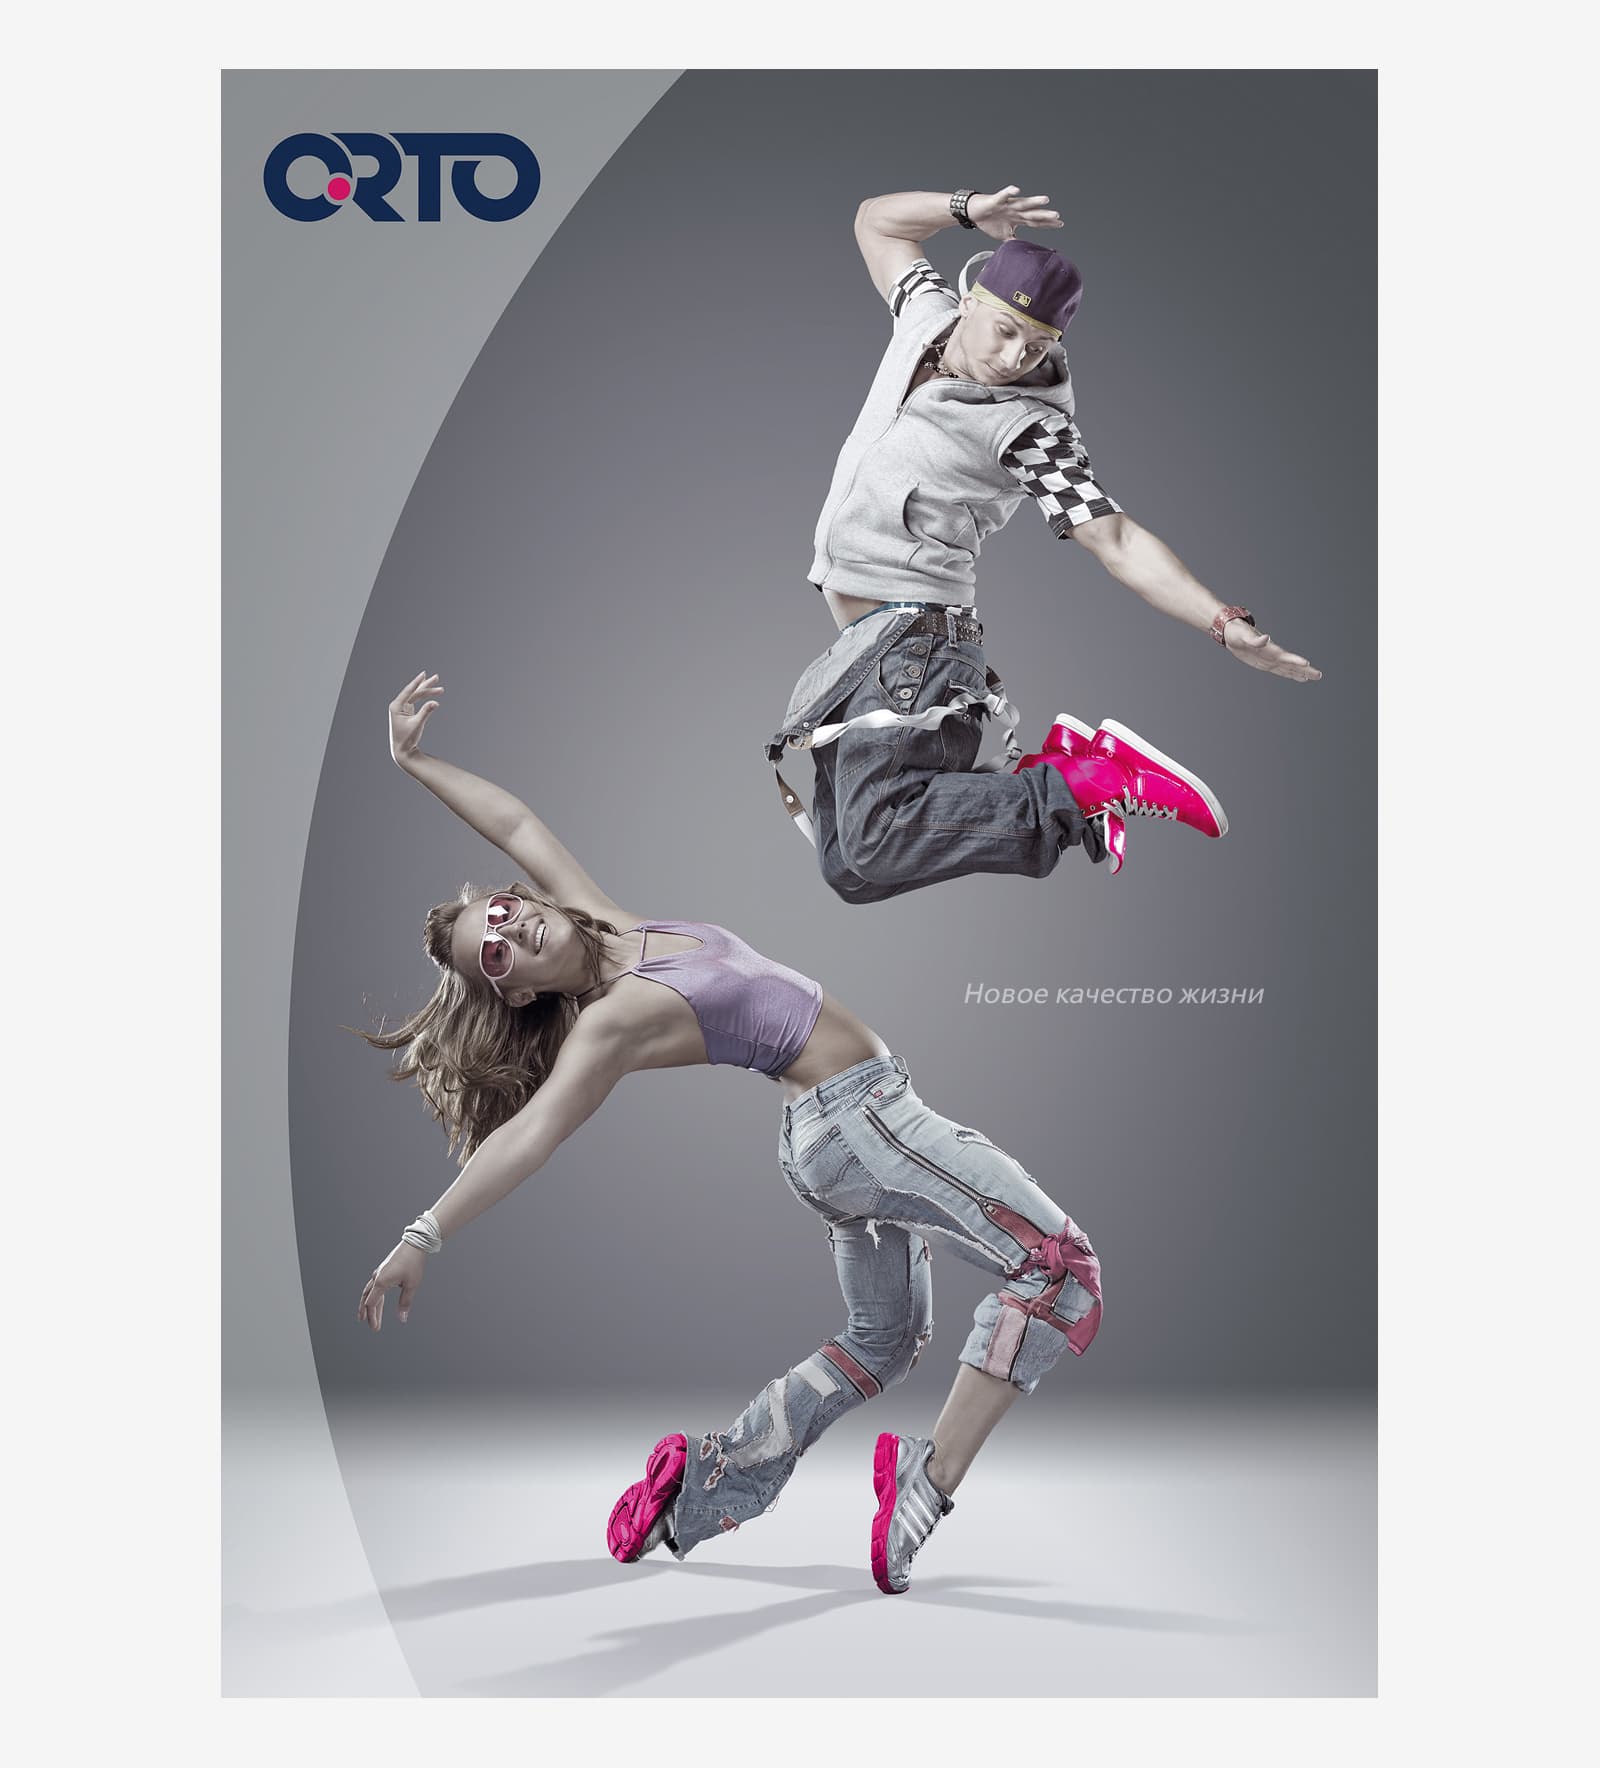 Разработали креативную концепцию для серии плакатов бренда ORTO Classic